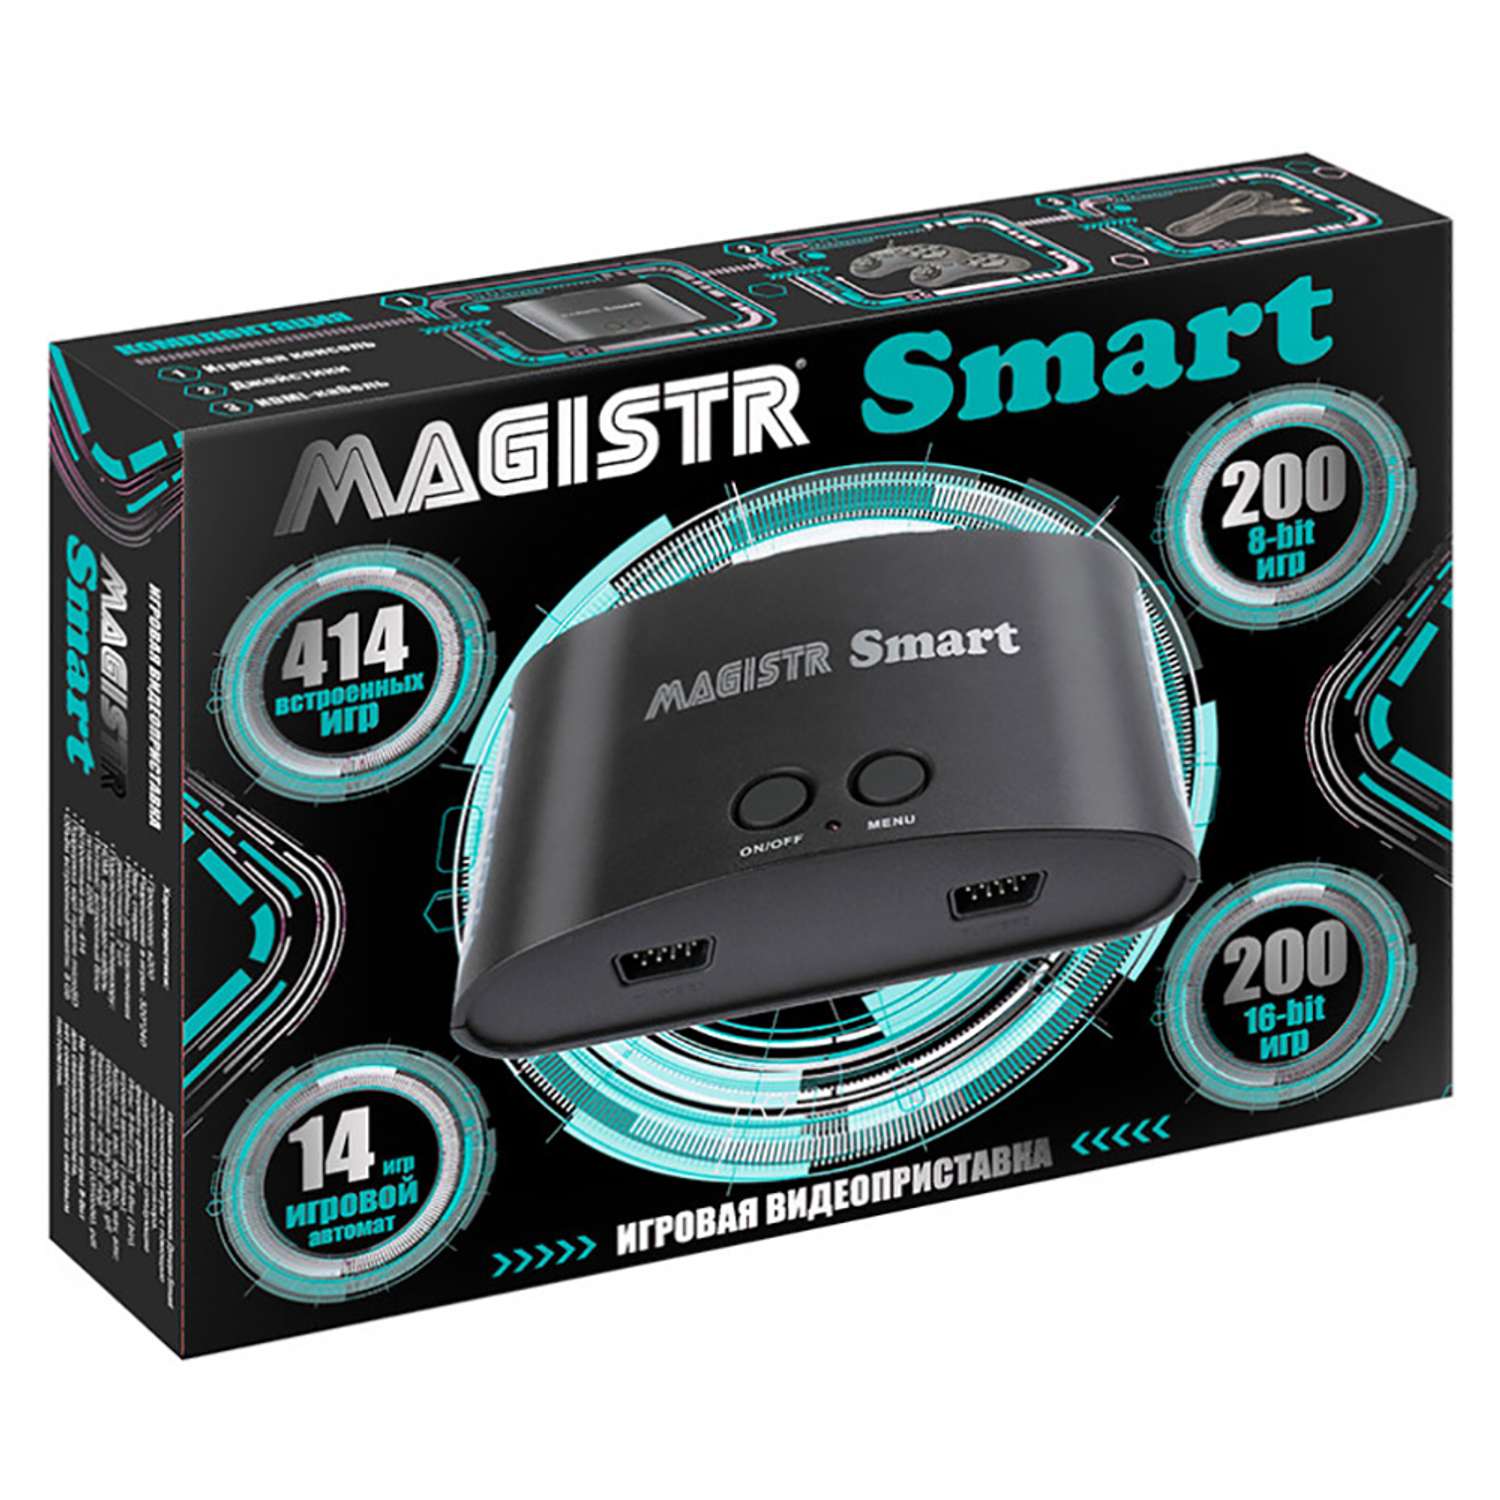 Игровая приставка Magistr Smart 414 встроенных игр 8-бит / 16-бит / MAME - фото 1